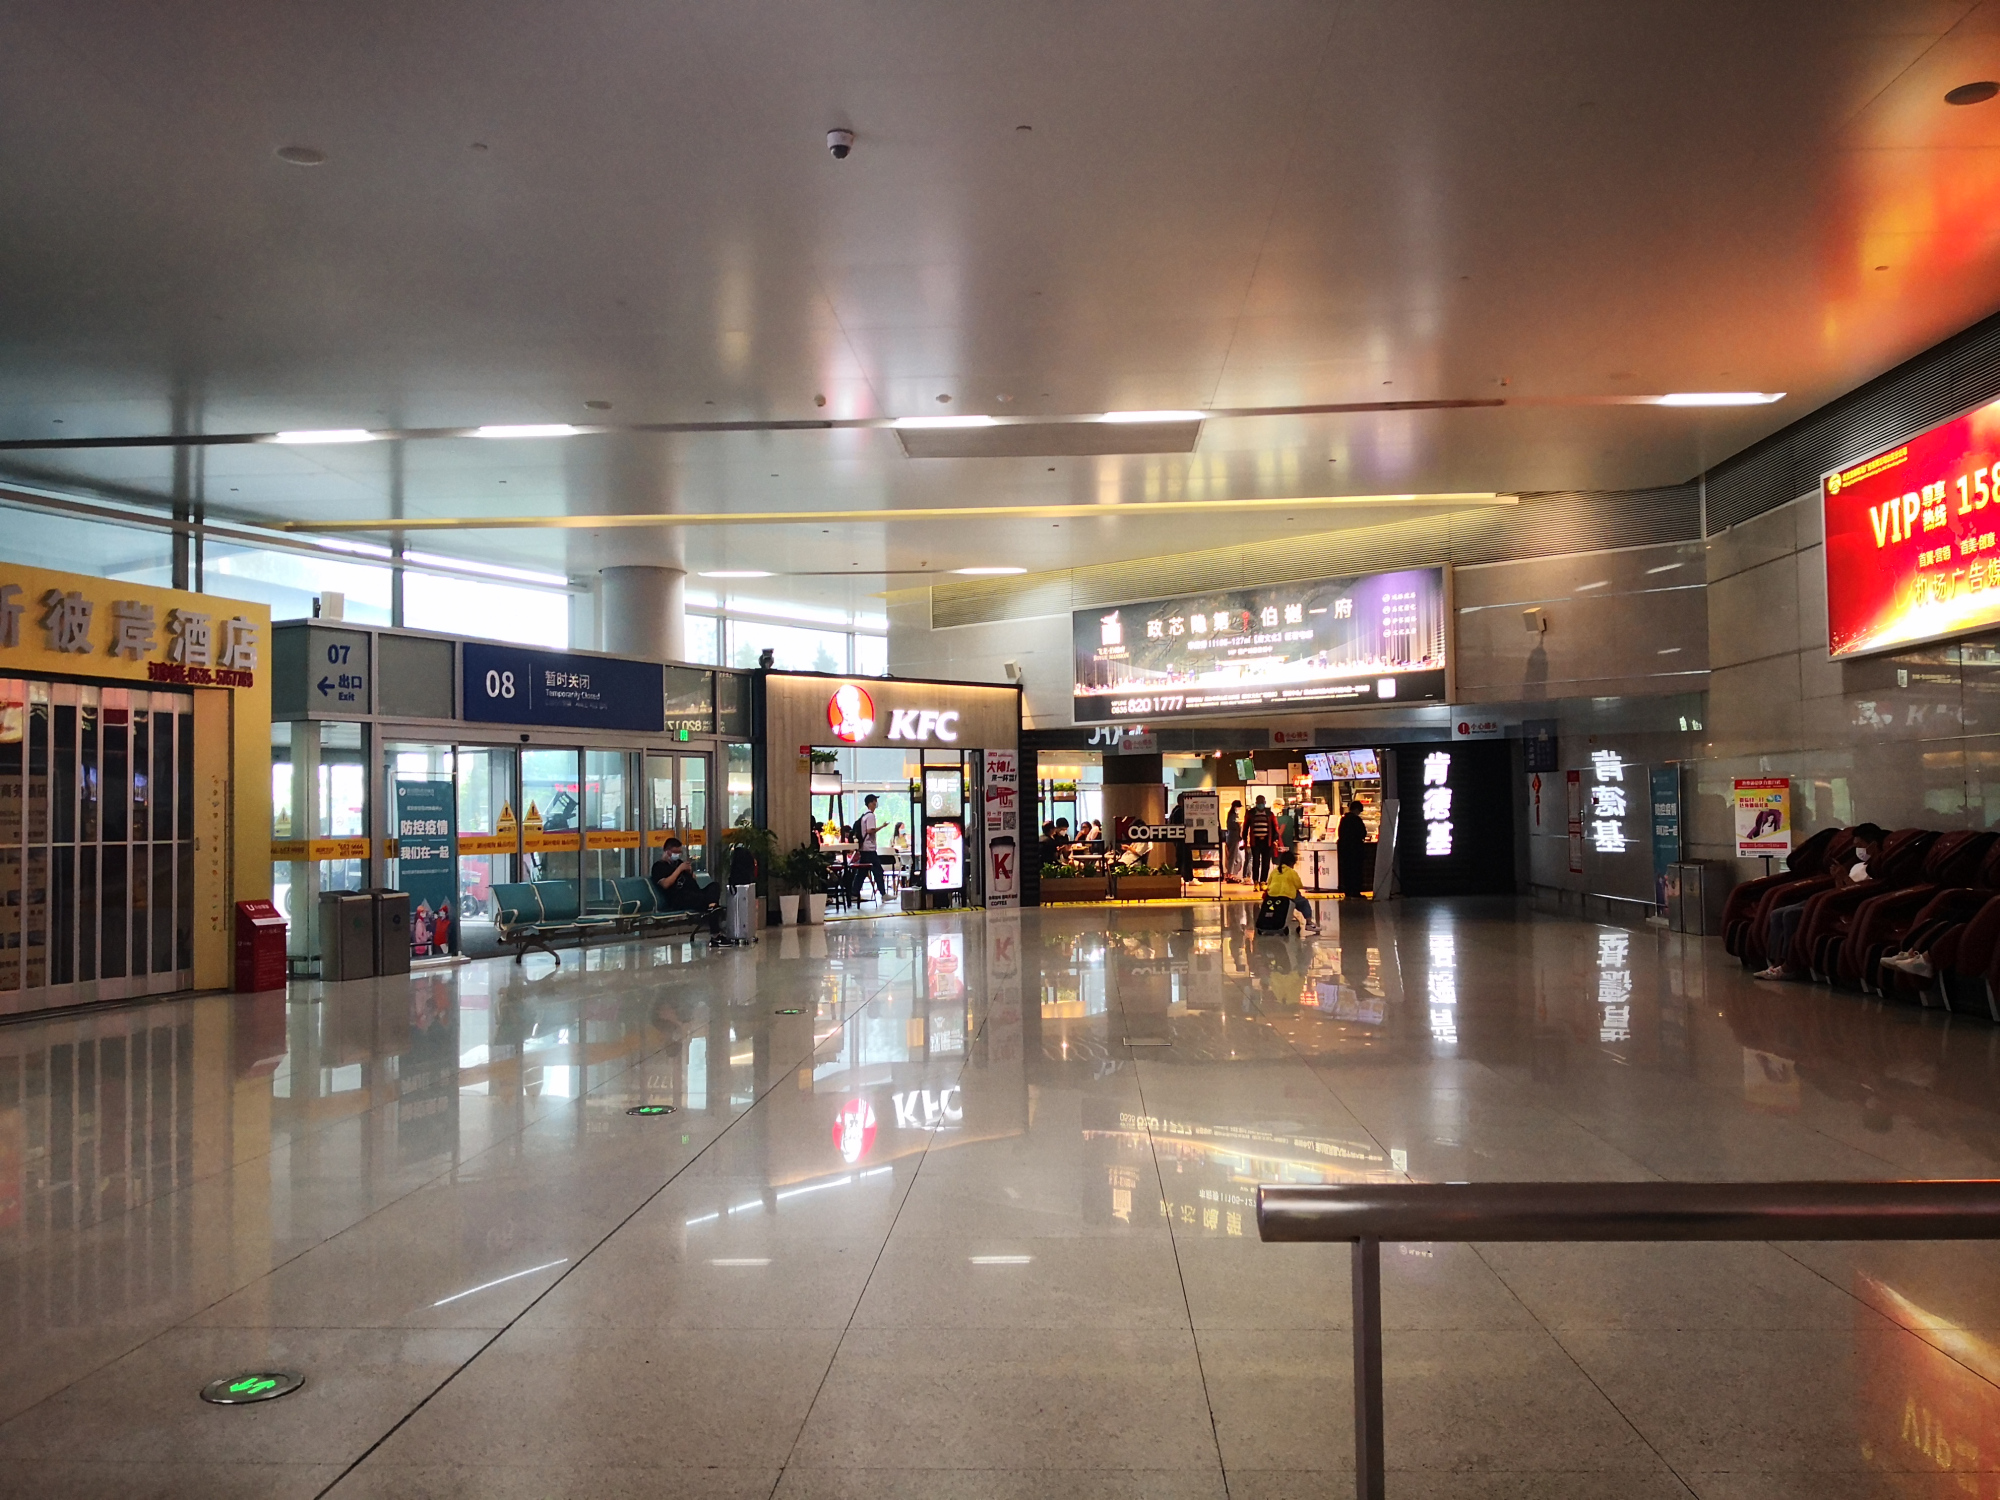 蓬莱机场内景图片